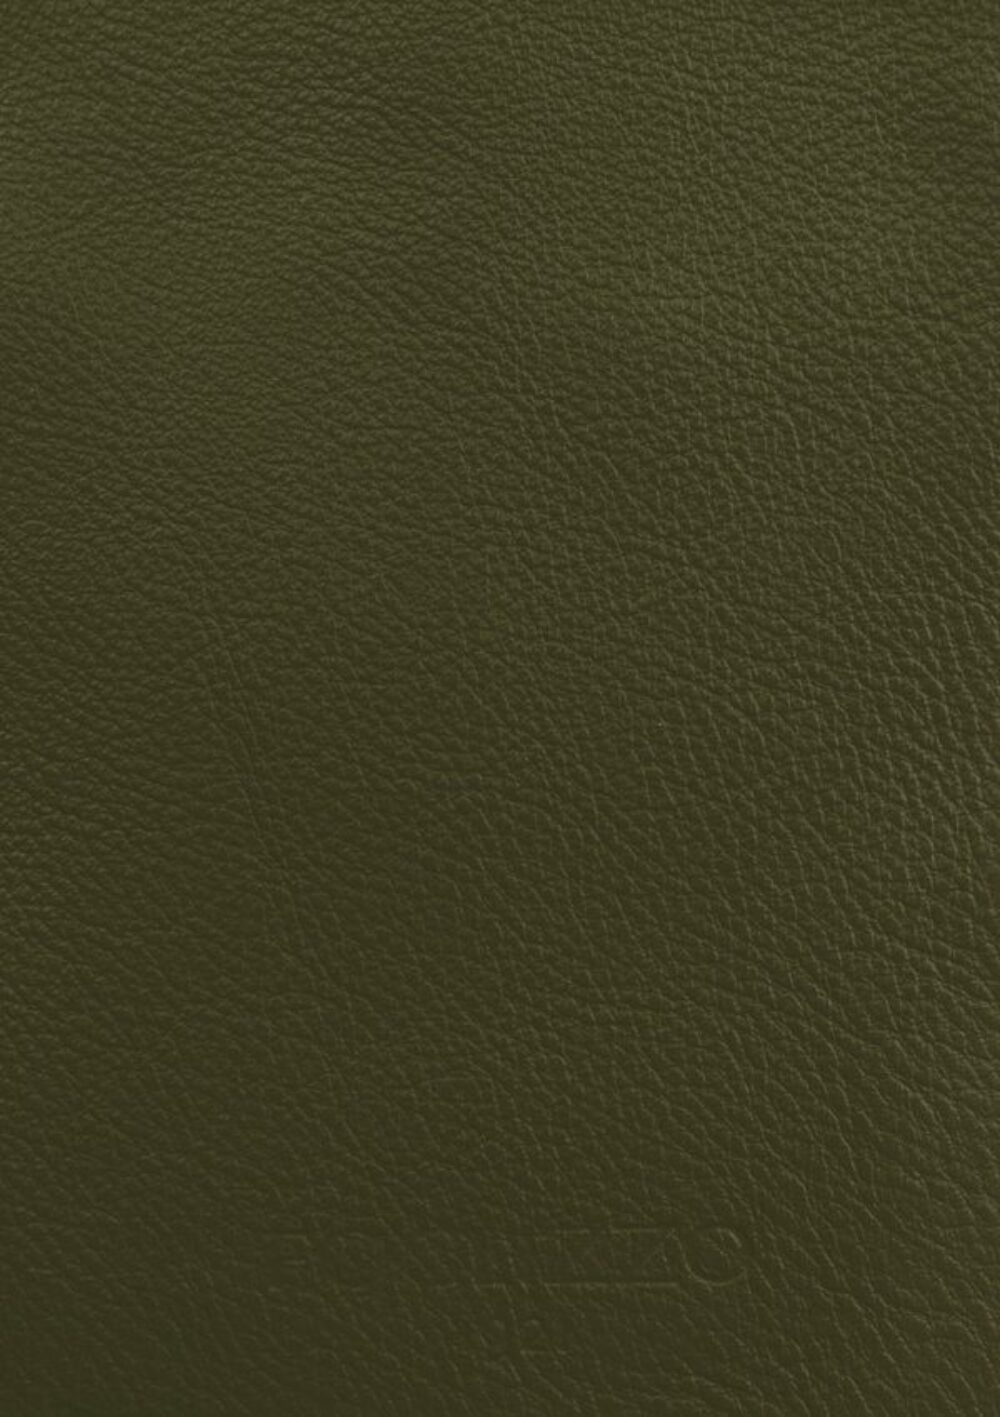 Diseño de lujo y alfombras de alta gama hechas a medida • Olive Green Jade